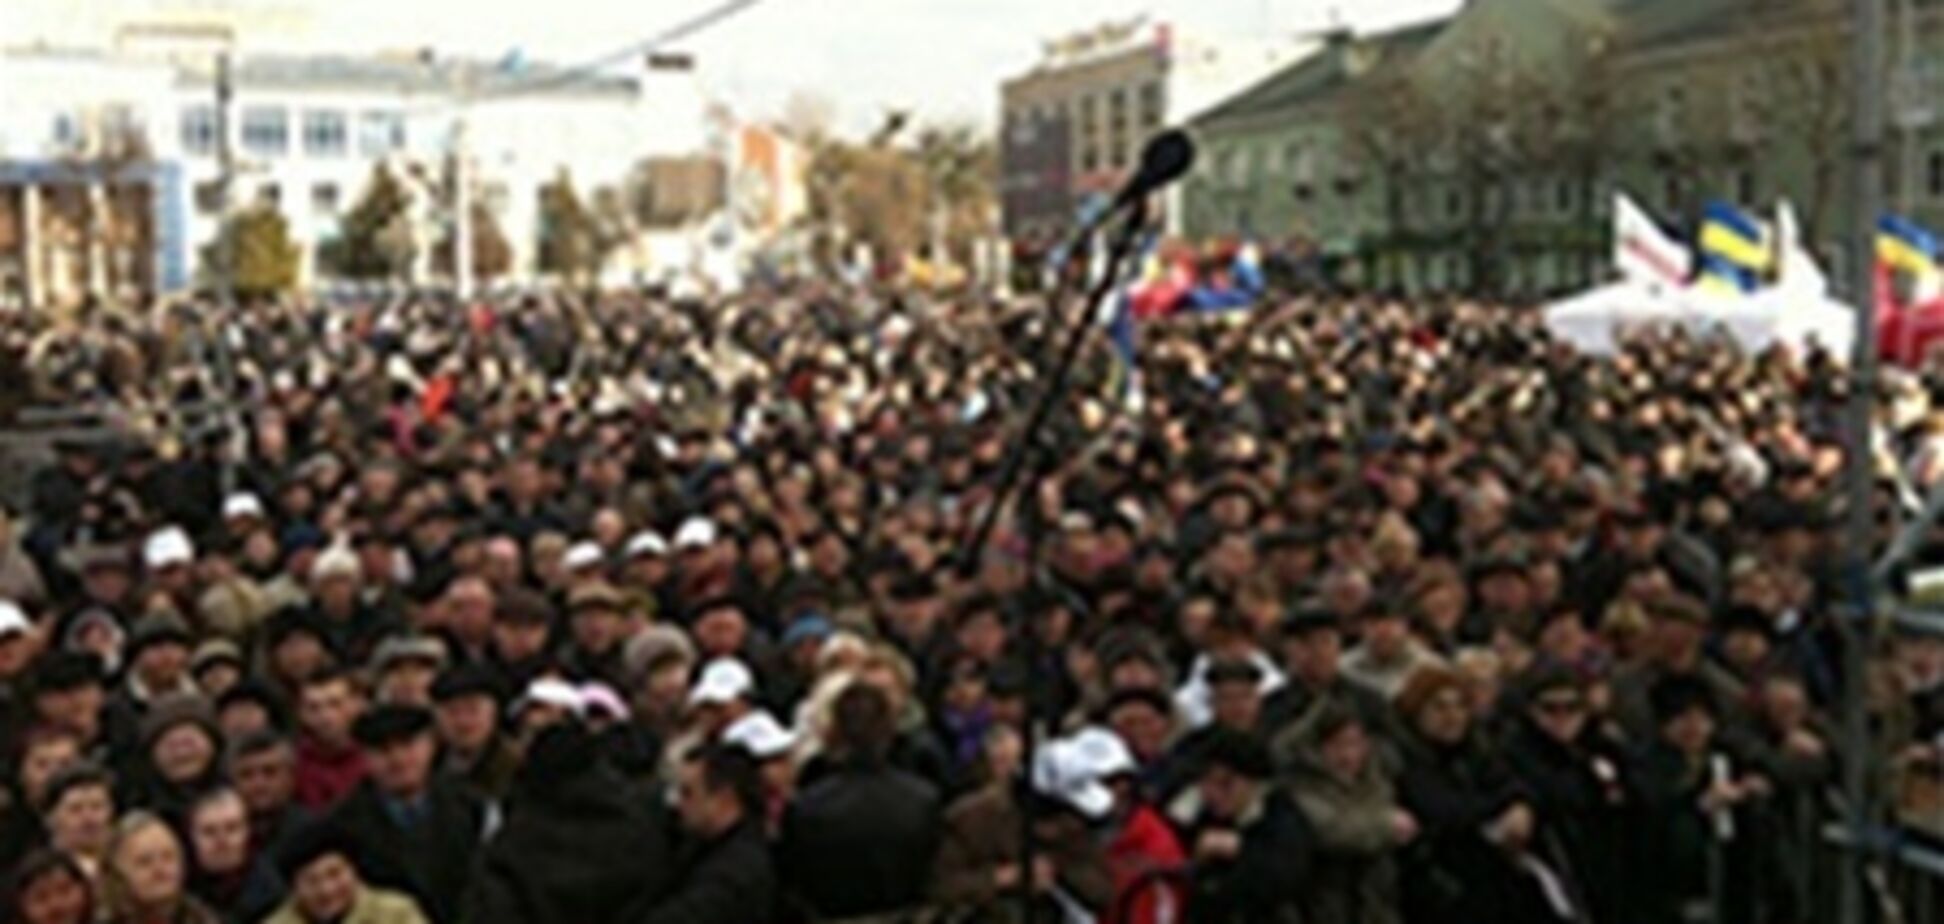 У Рівному зібралися 1,1 тис. опозиційних повстанців - міліція